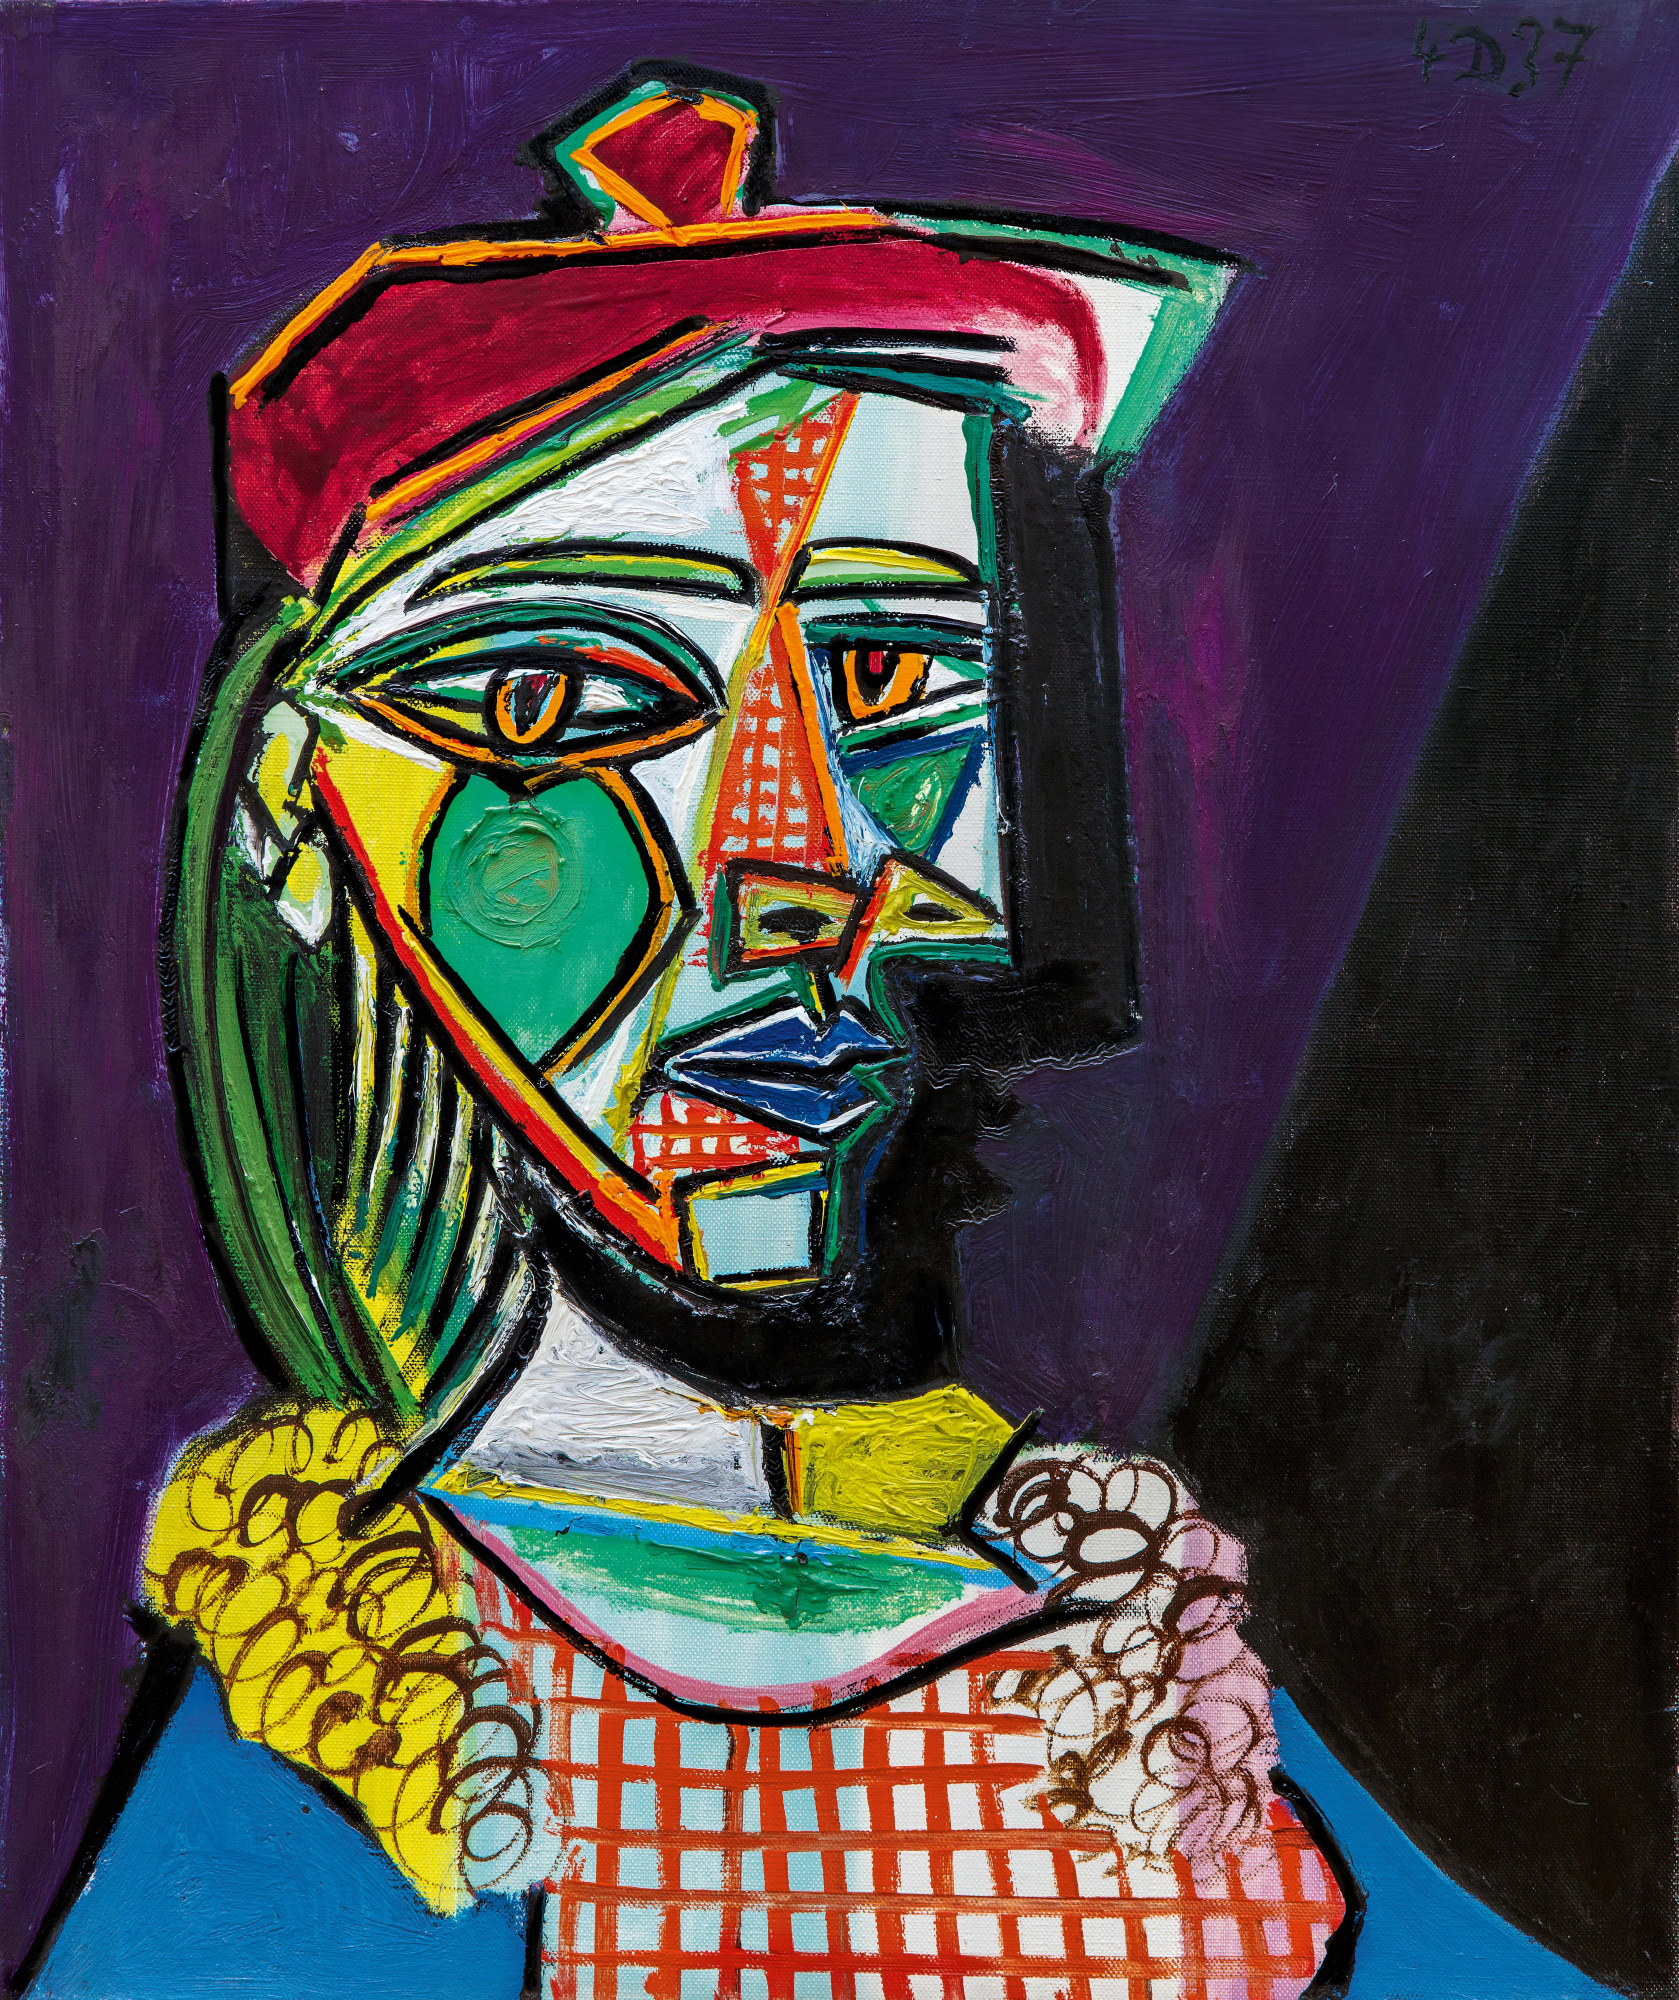 Pablo Picasso Mujer con boina y vestido cuadros (Maria Theresa Walter), 1937: Descripción de la obra | Arthive